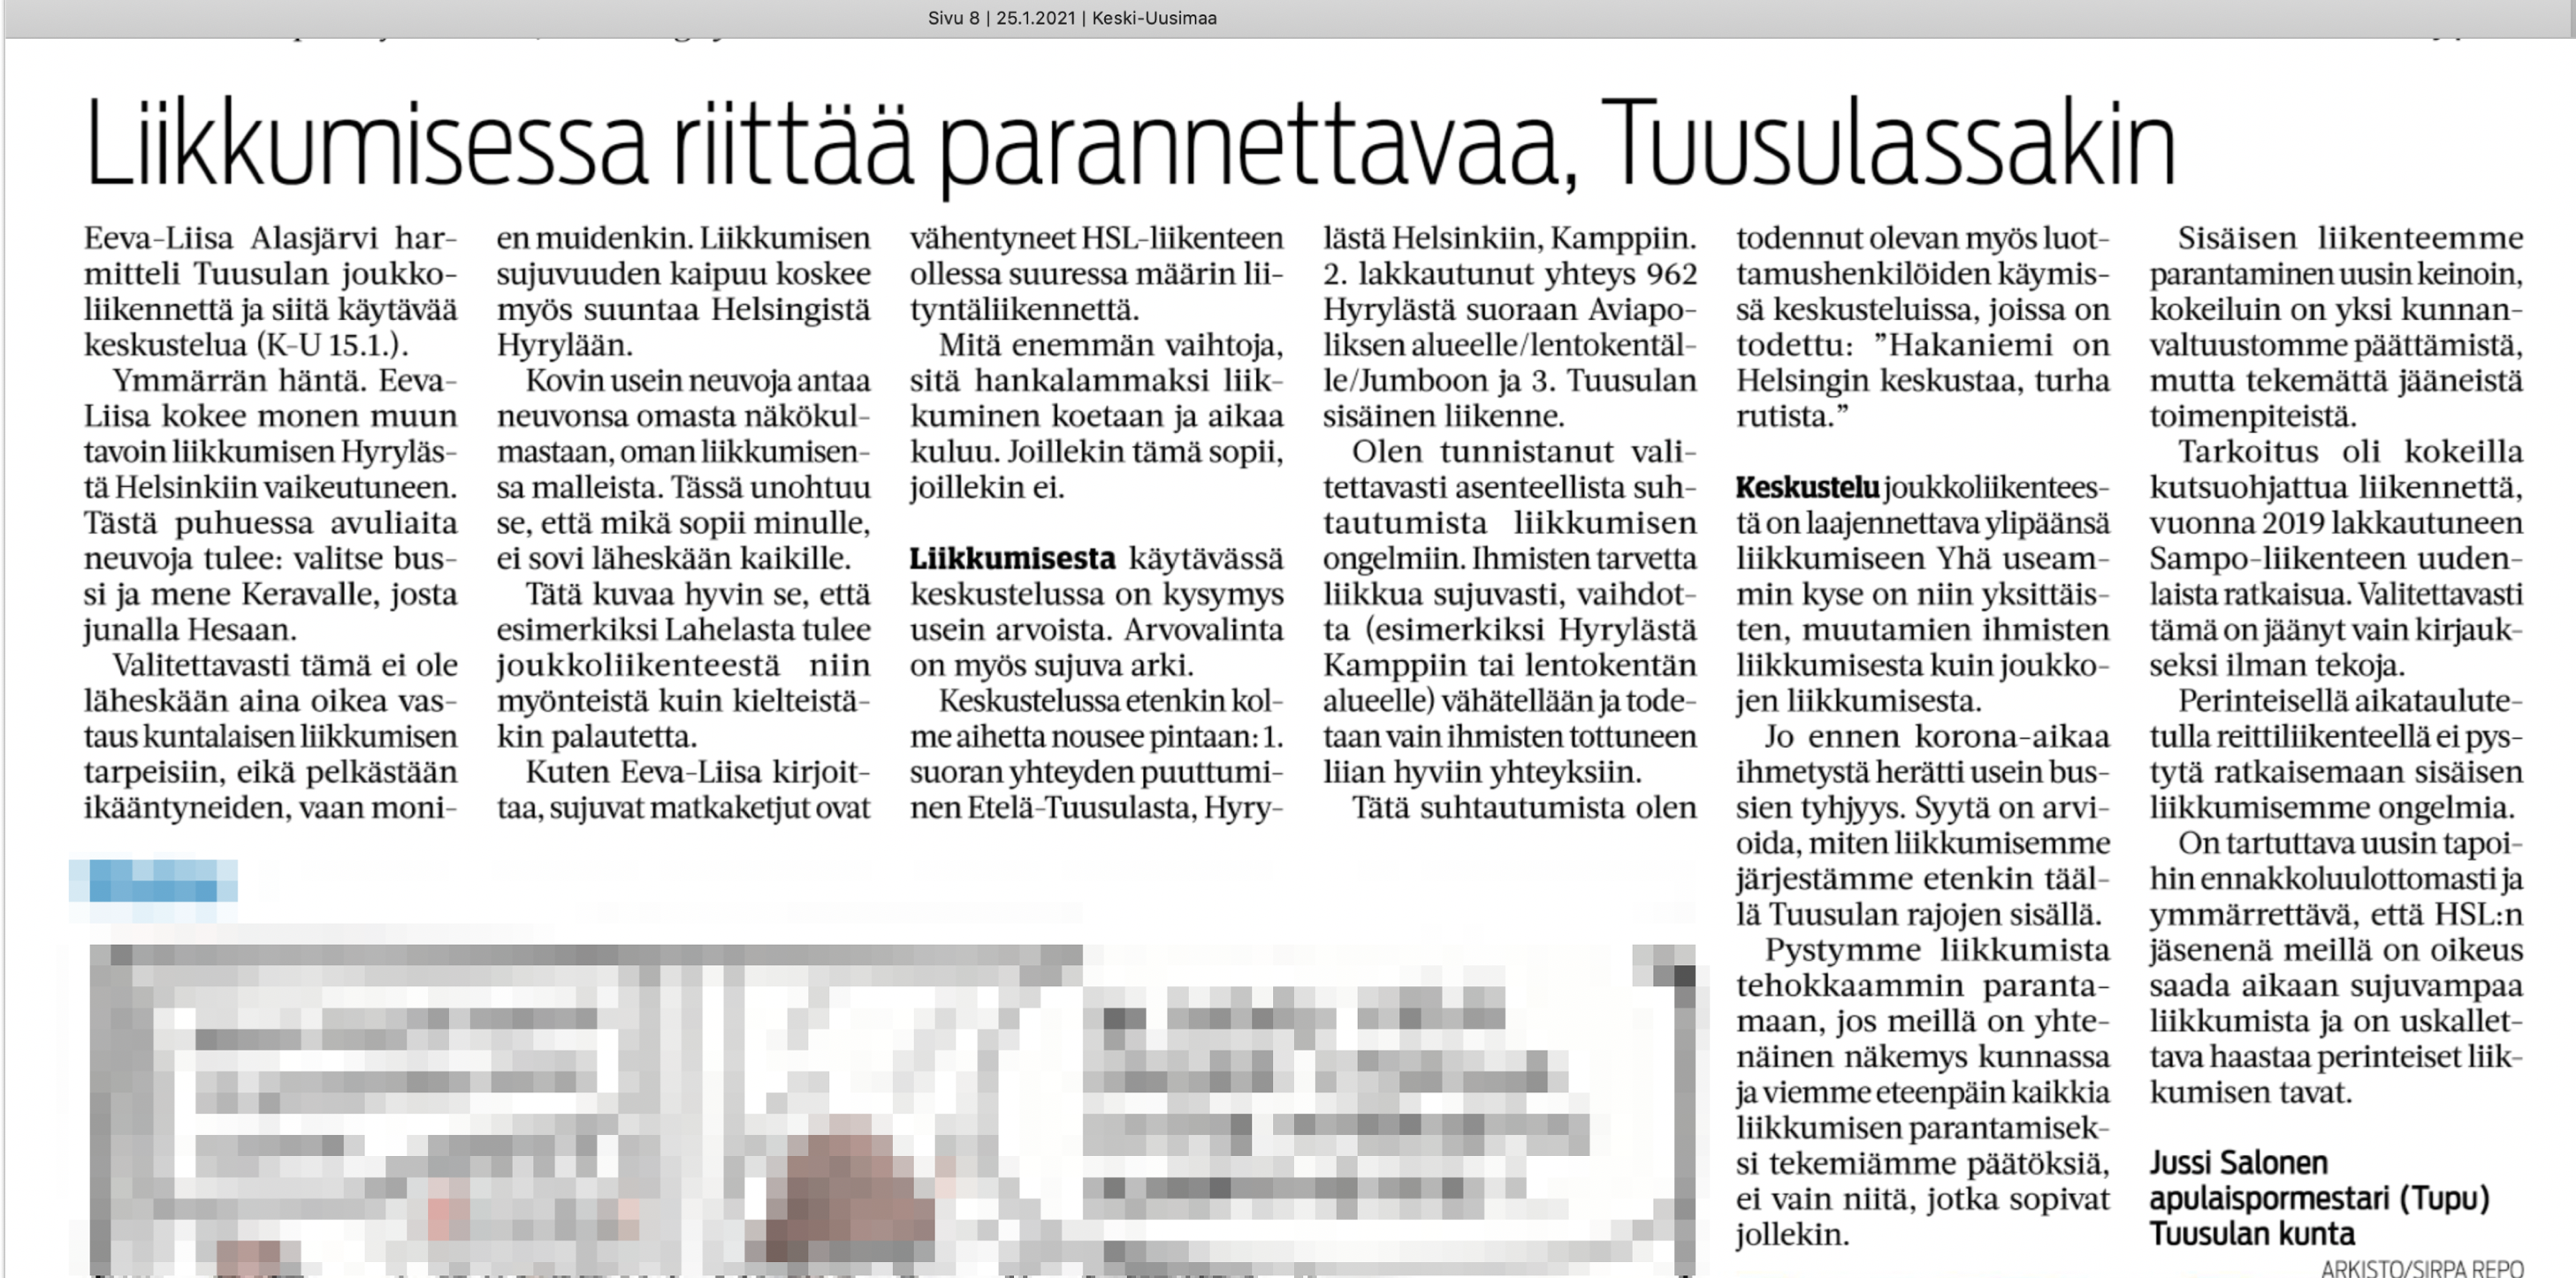 Keski-Uusimaa 2020-01-25 Lukijalta Jussi Salonen: Liikkumisessa riittää parannettavaa, Tuusulassakin